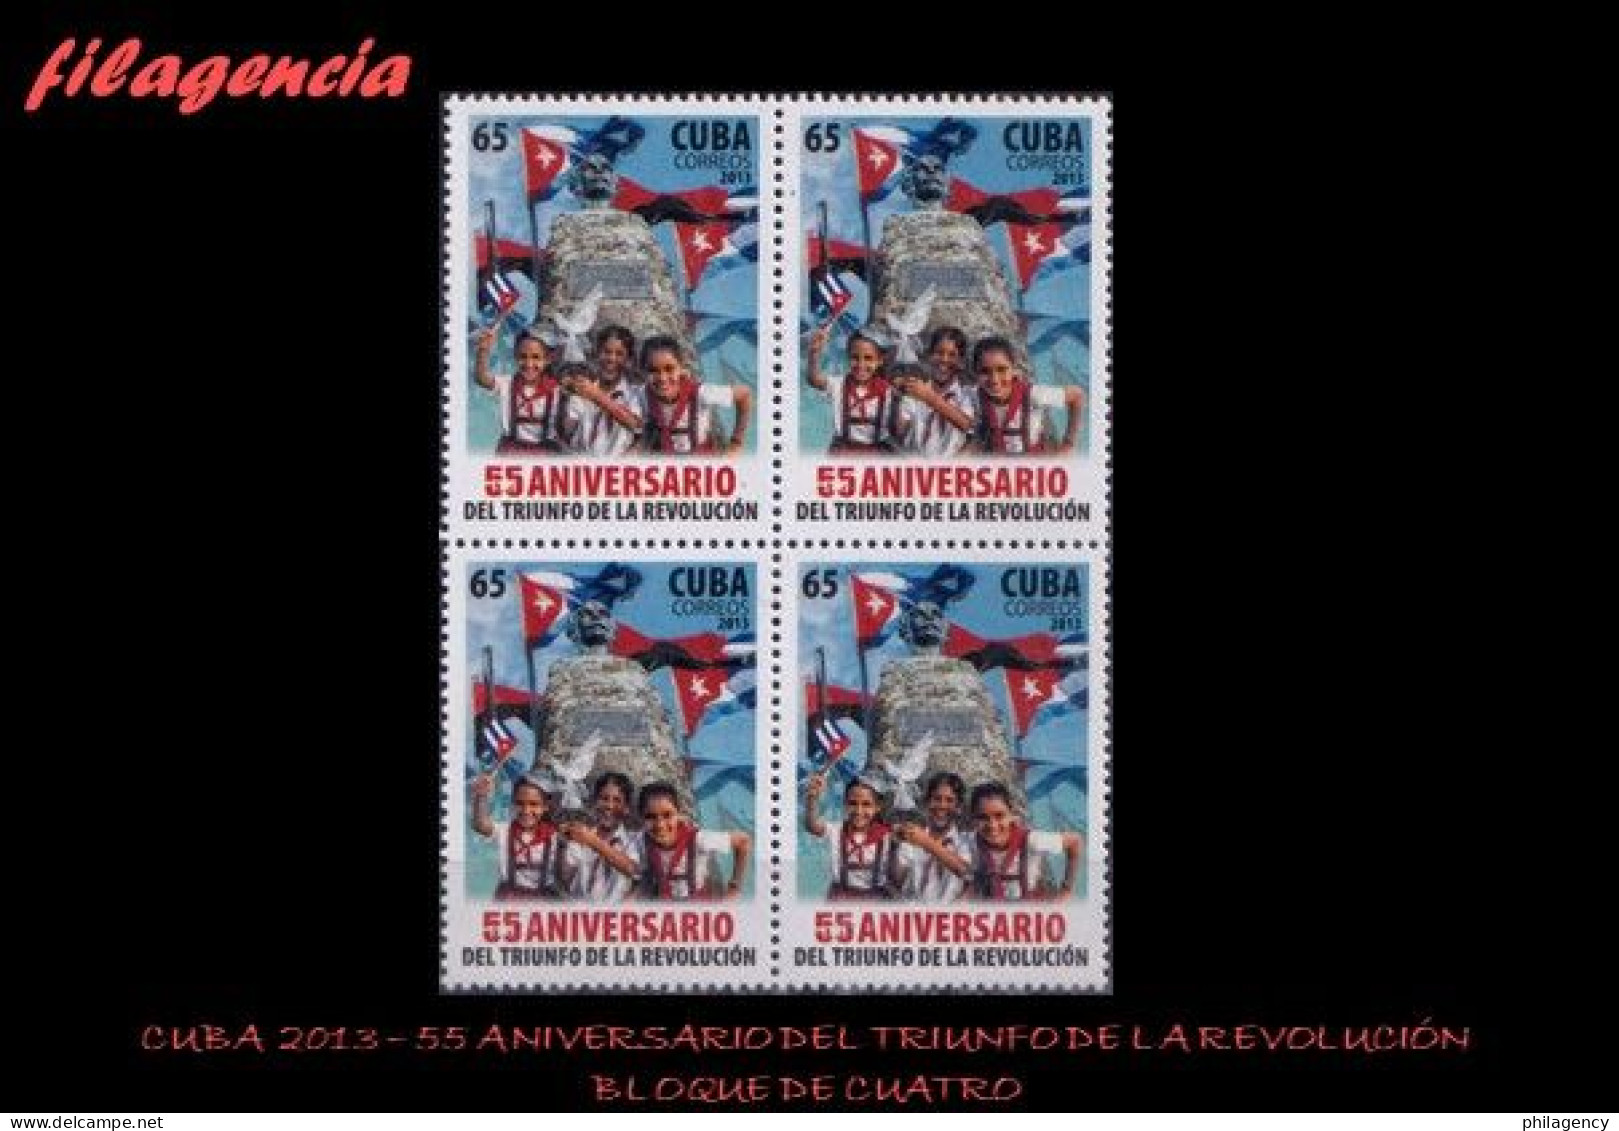 CUBA. BLOQUES DE CUATRO. 2013-45 55 ANIVERSARIO DEL TRIUNFO DE LA REVOLUCIÓN CUBANA - Unused Stamps